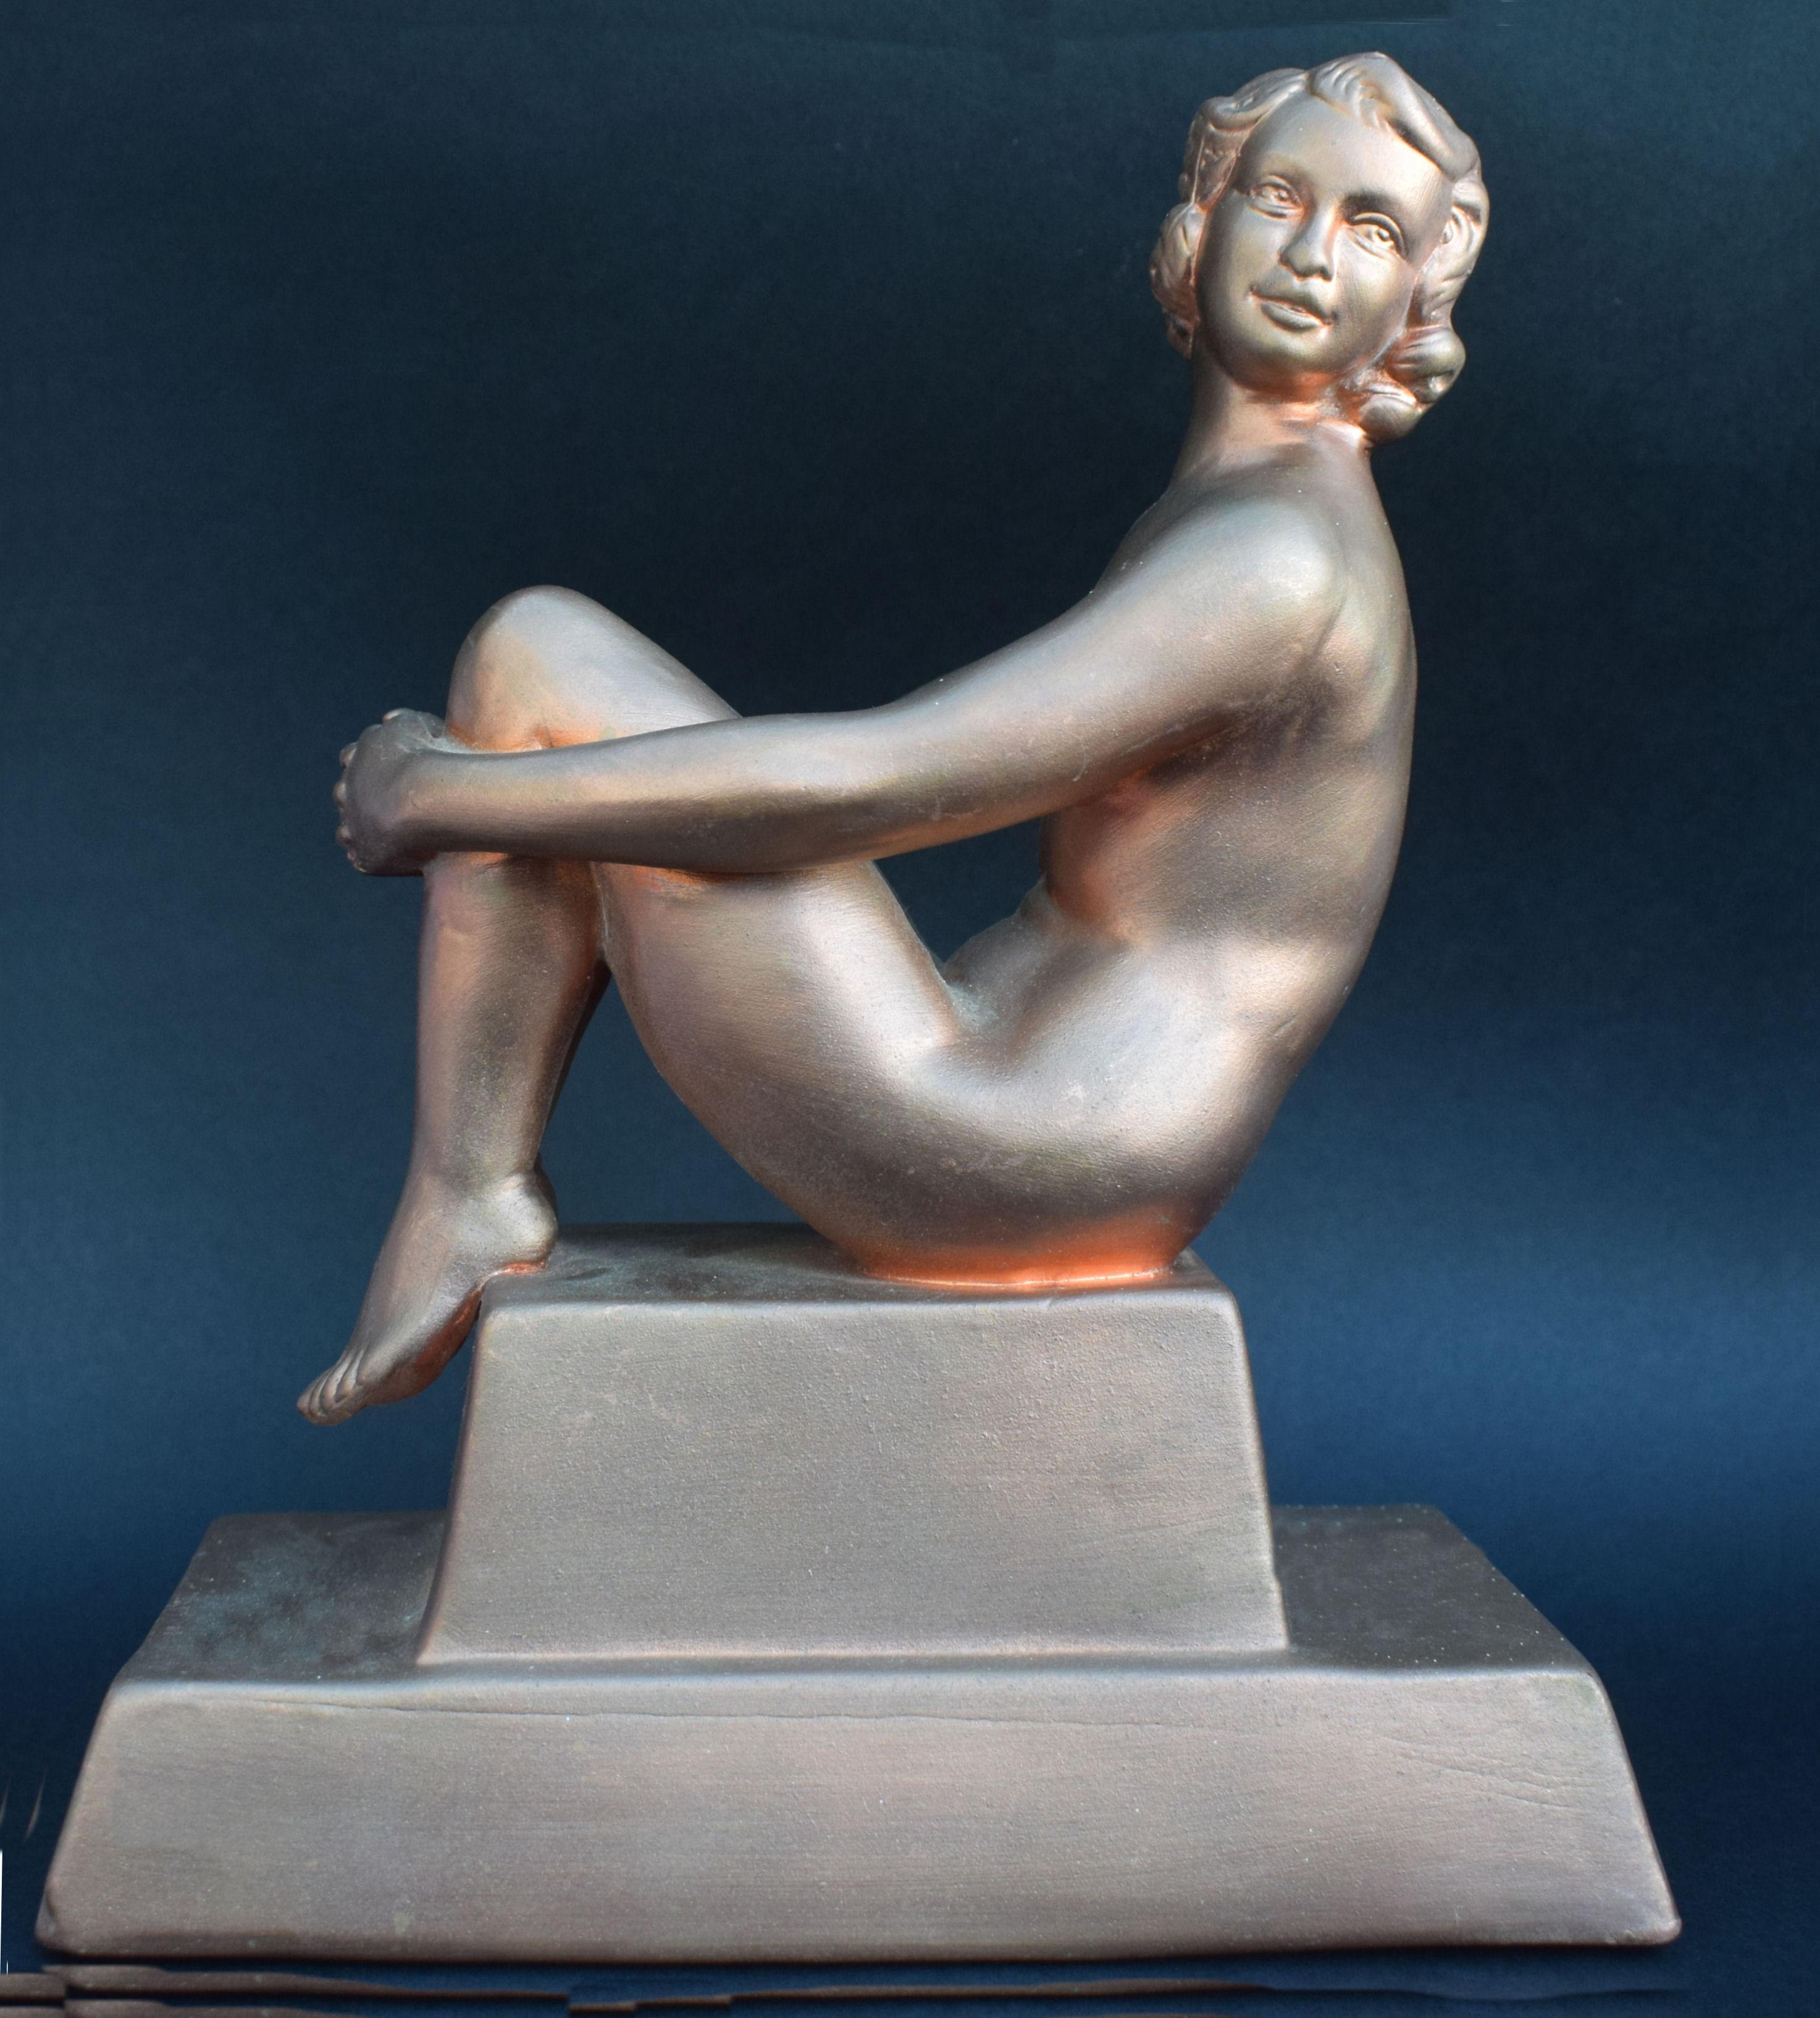 Superbe grande figurine Art Déco des années 30 en plâtre armé, totalement authentique. Il ne s'agit pas d'une reproduction moderne. Une dame charmante qui fait une grande déclaration ! L'état est très bon si l'on considère que ce type de figurine